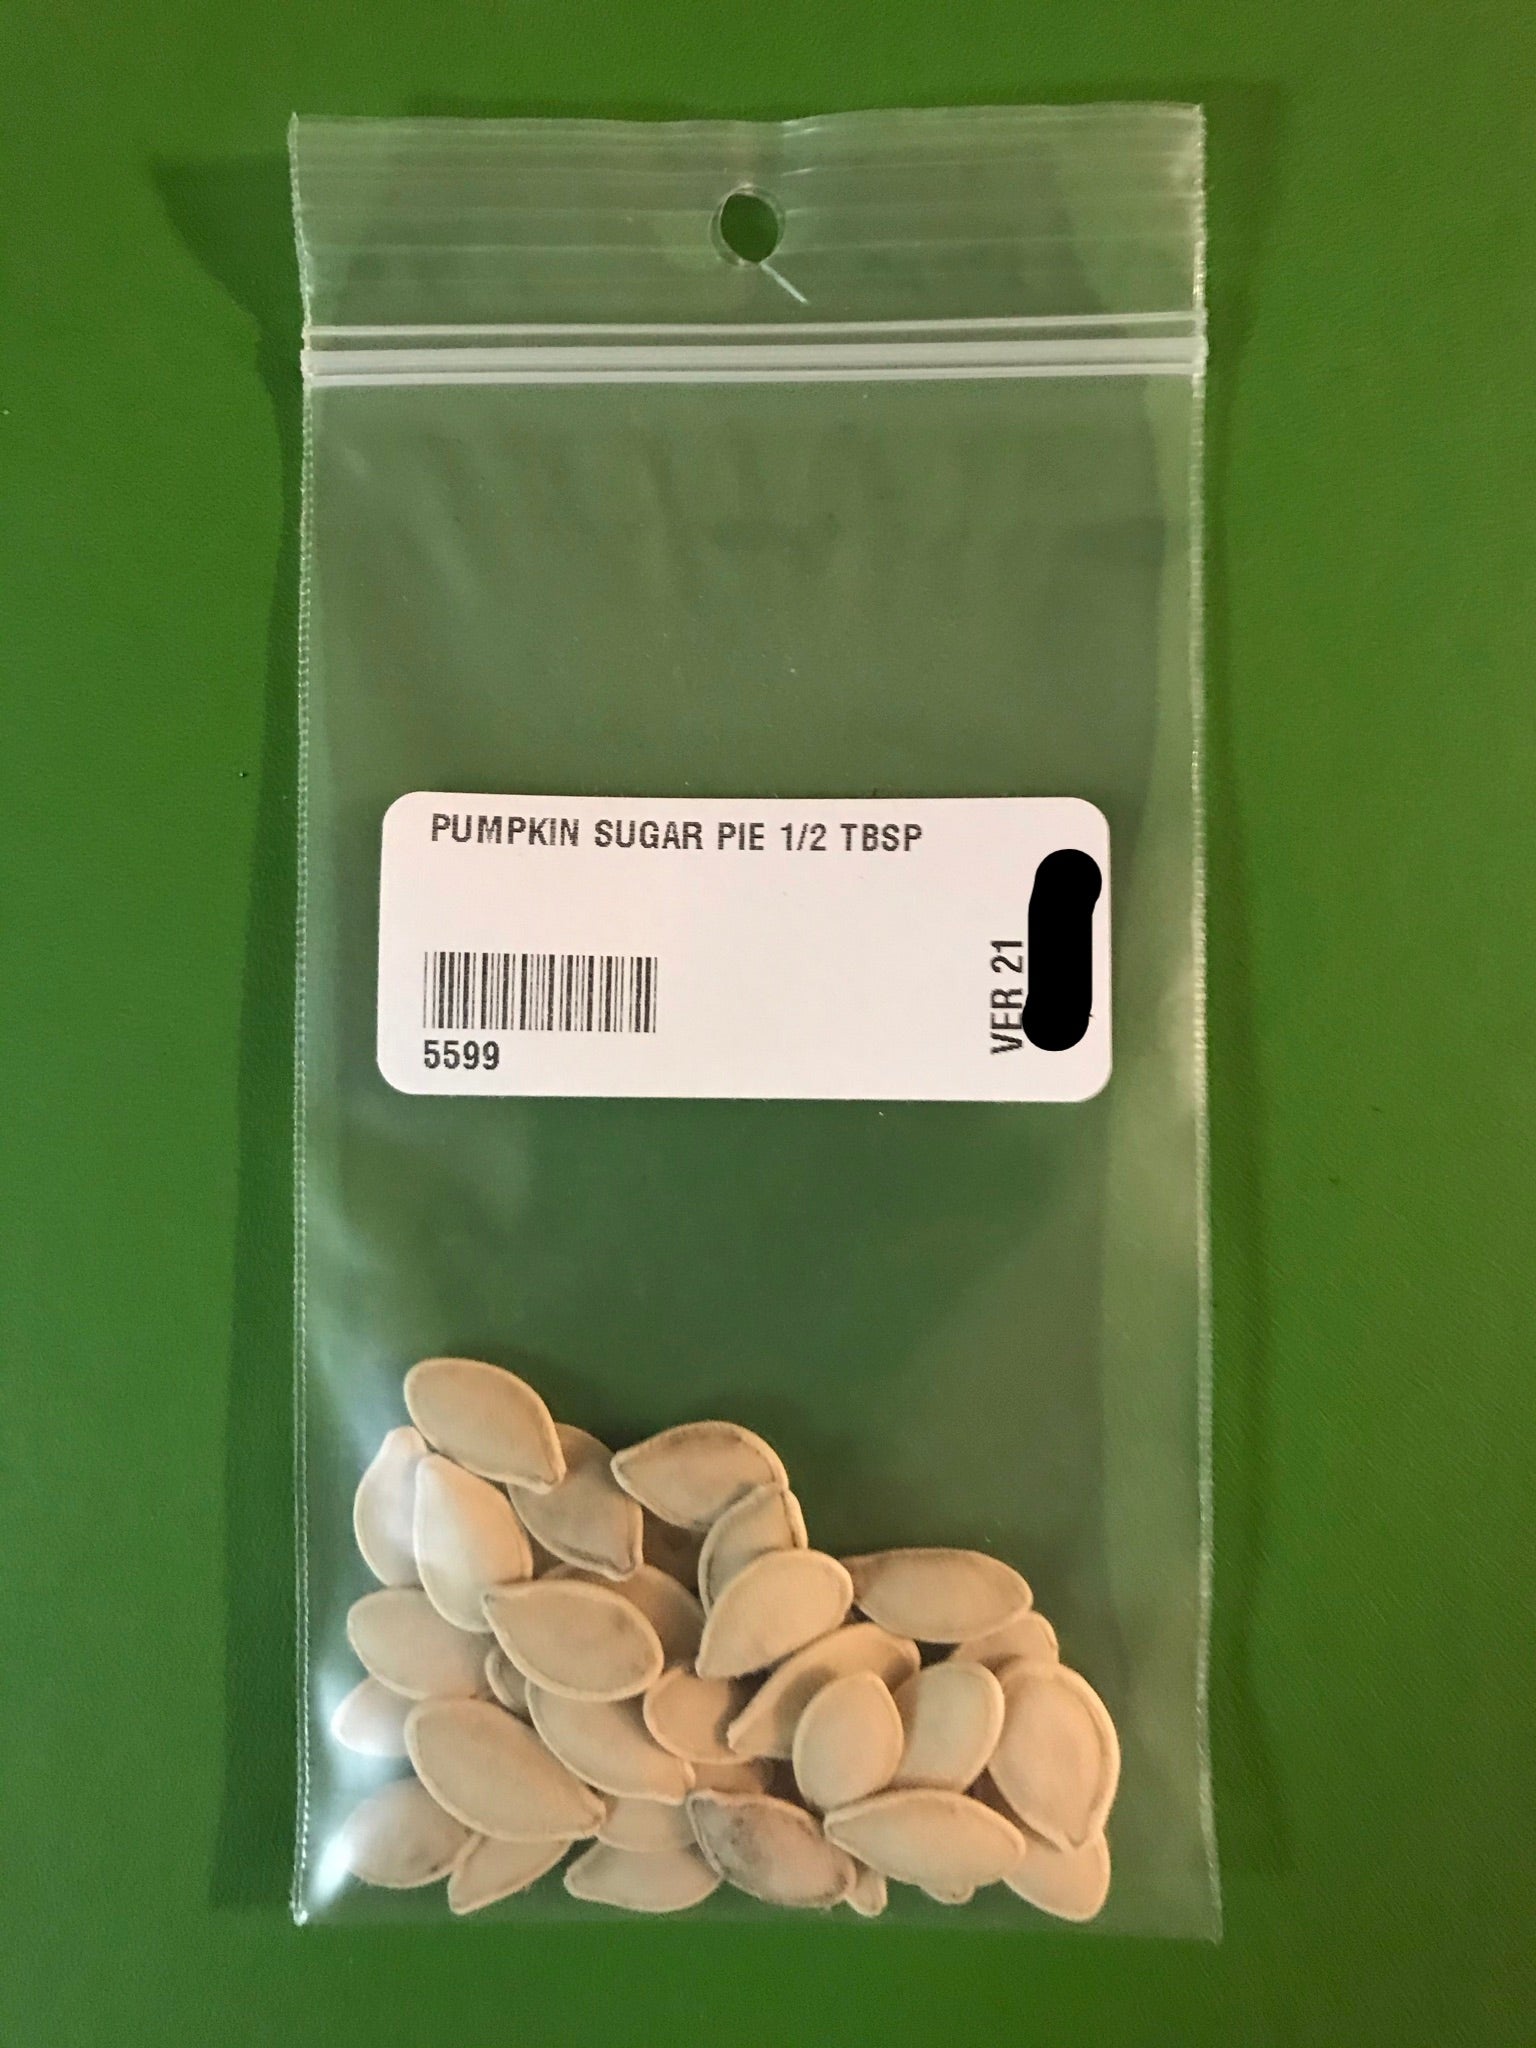 Small Sugar or Pie Pumpkin Seeds (Baking Type) (110 days) - 1/2 Tbsp - Bulk